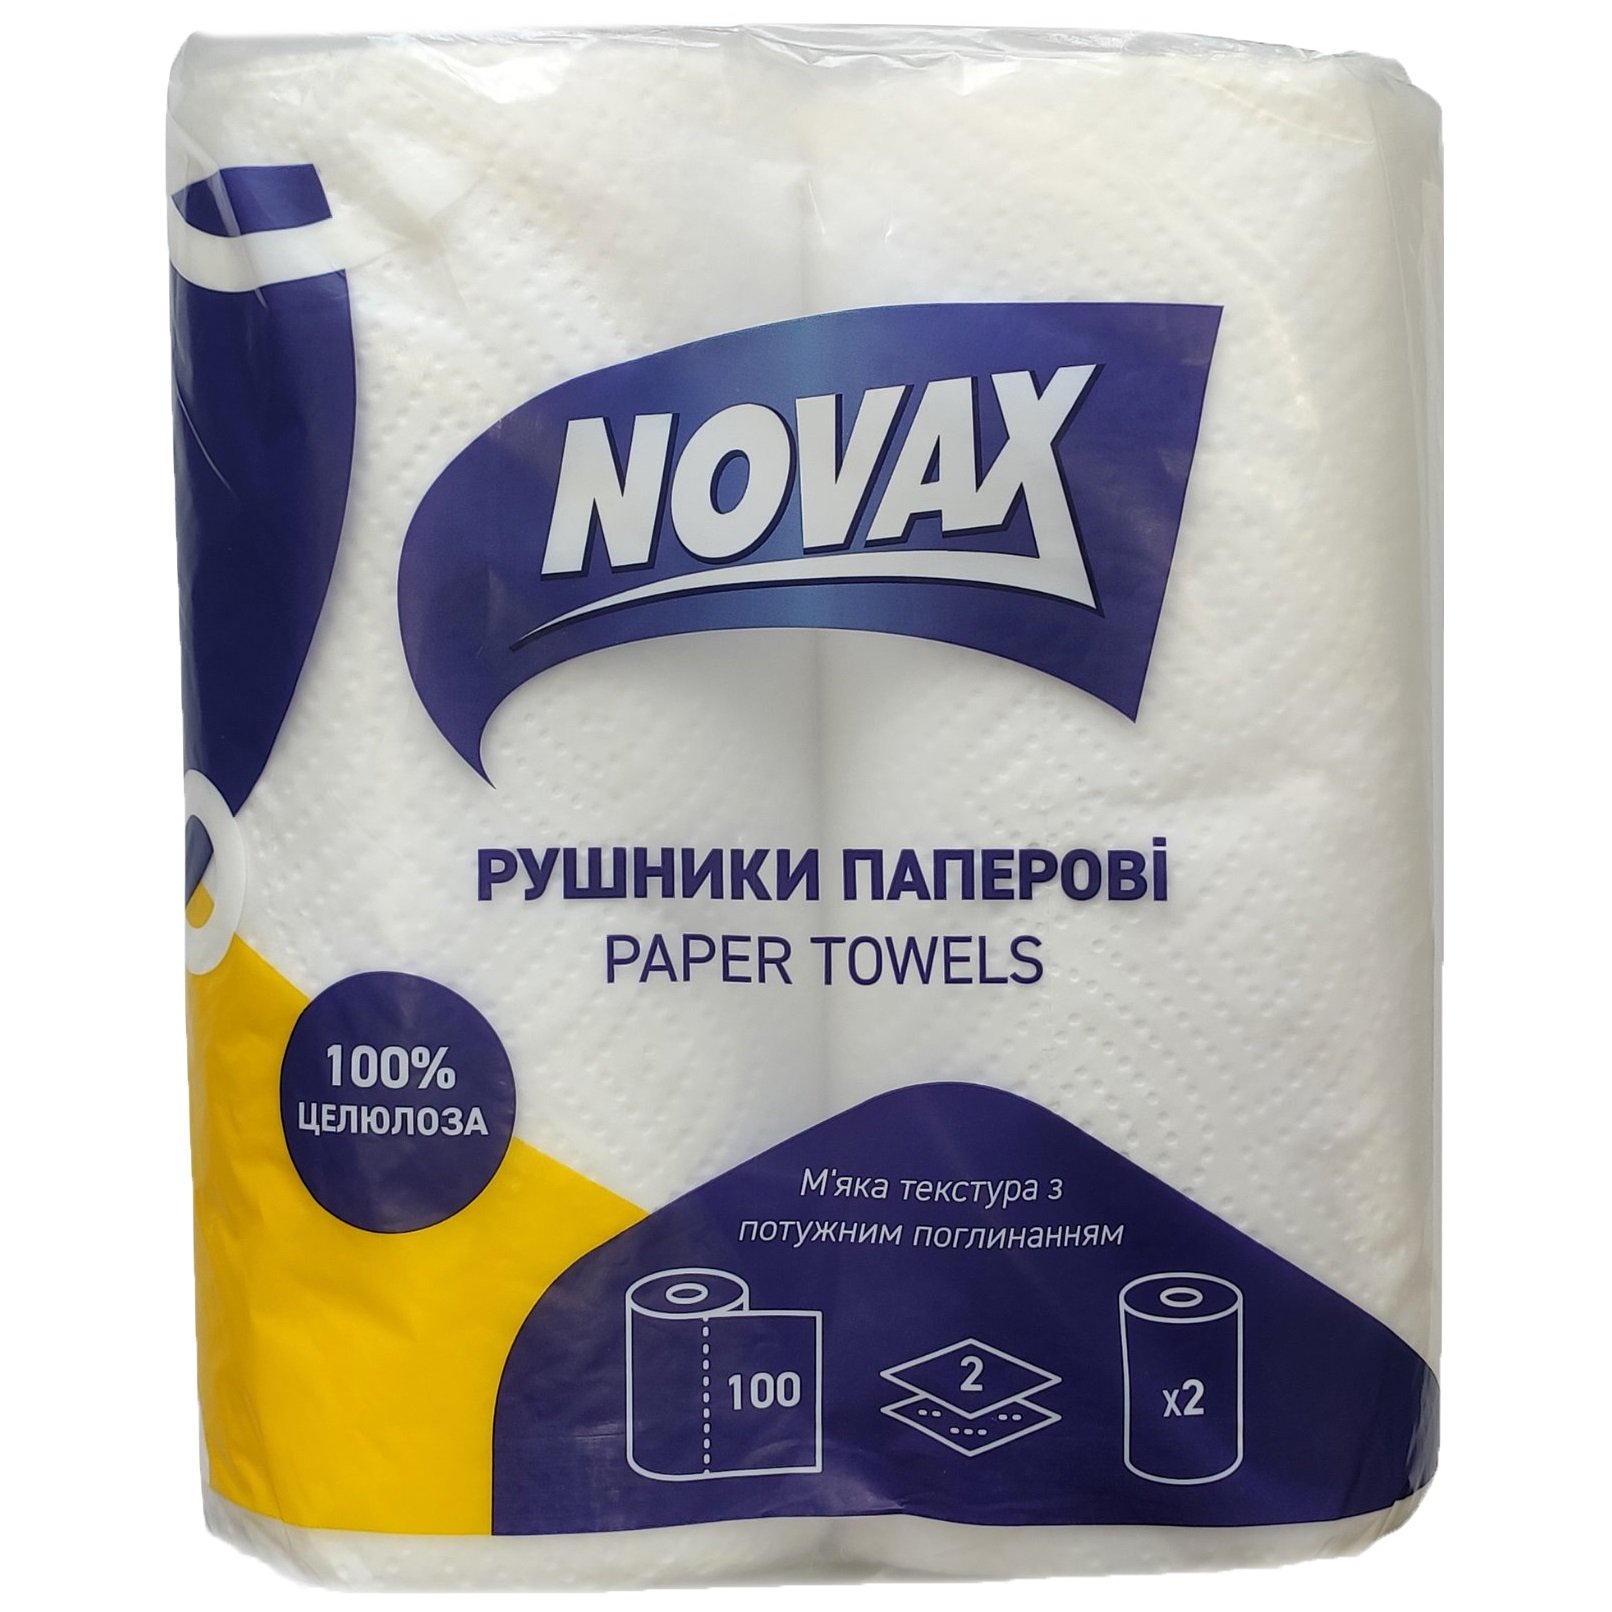 Бумажные полотенца Novax, двухслойные, 100 листов, 2 рулона - фото 1